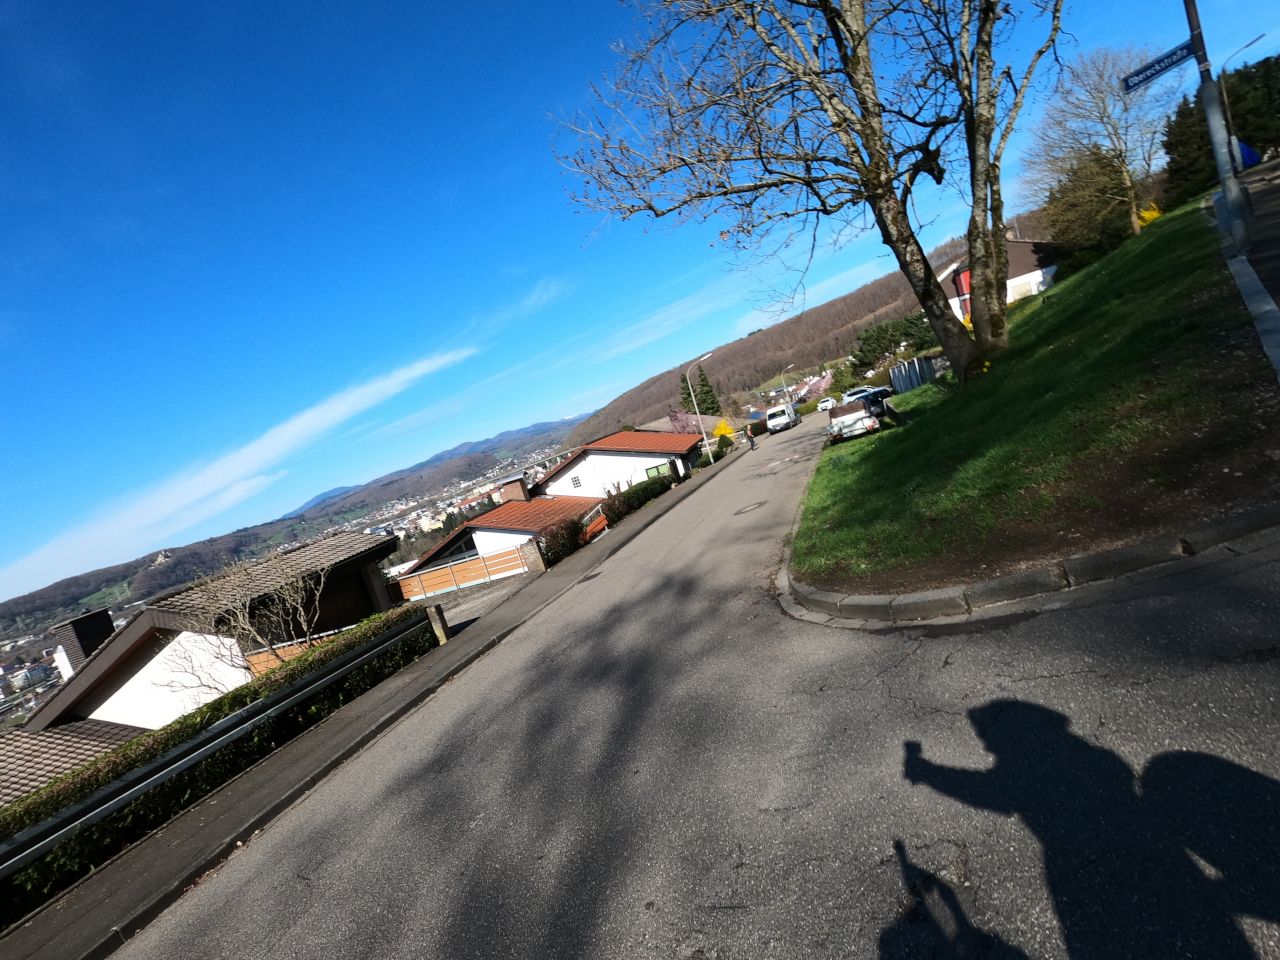 Schräg aufgenommenes Foto, Horizont oben rechts nach unten links. Eine Frühlingsbild mit grün und blauem Himmel, keimenden Bäumen. Auf dem Teer der Straße der Schatten eines fotografierenden Reiseradlers.